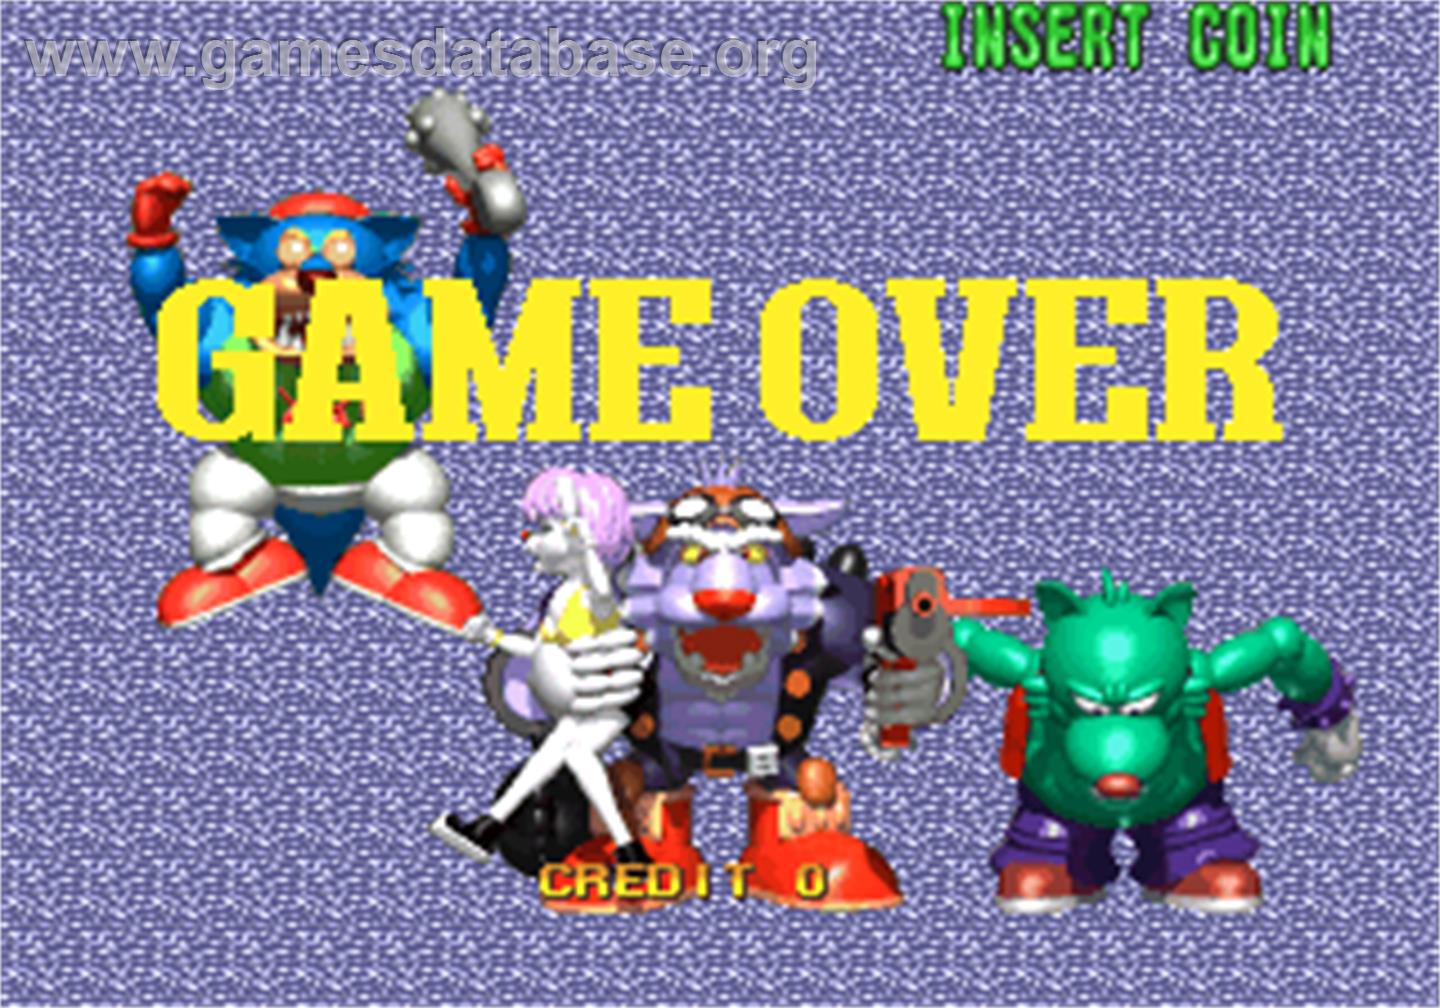 Battle Bubble - Arcade - Artwork - Game Over Screen